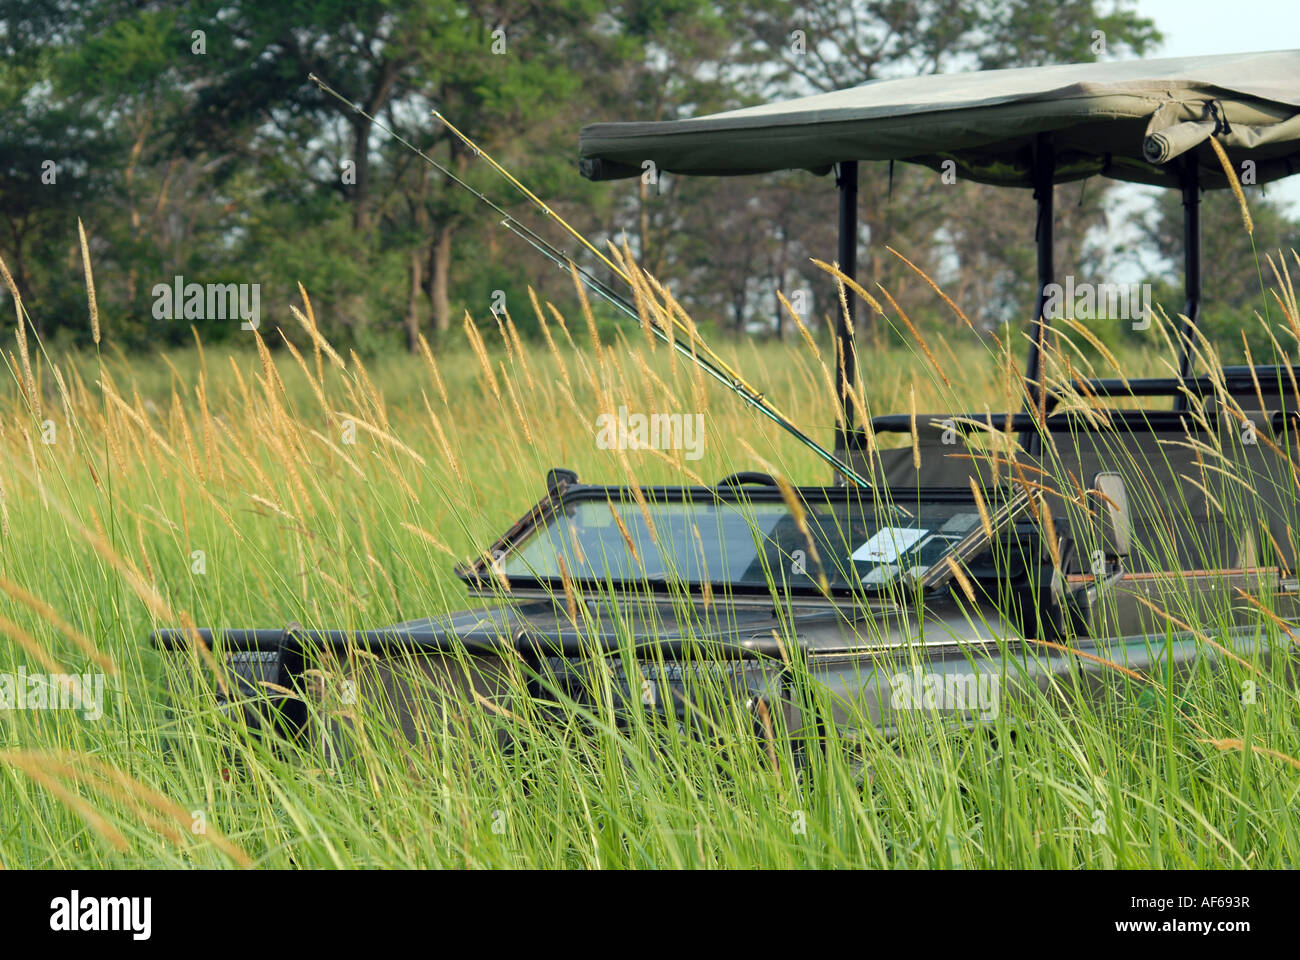 Safari Landrover in tall grass, Semliki National Reserve, Uganda Stock Photo